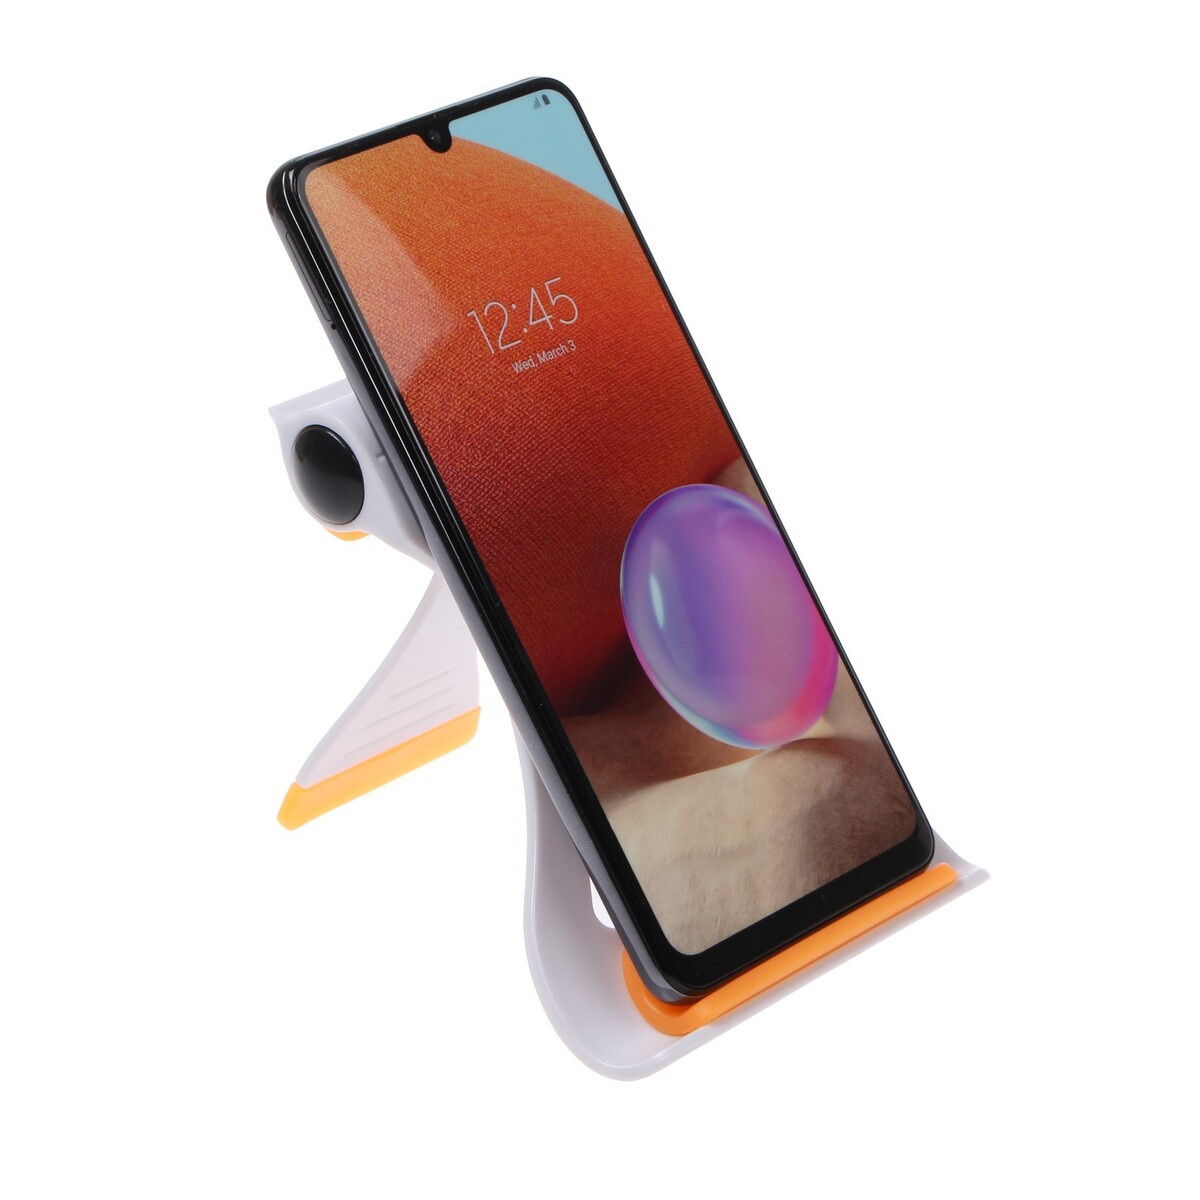 Подставка для телефона luazon, складная, усиленная, регулируемая высота, бело/оранжевая, Luazon Home